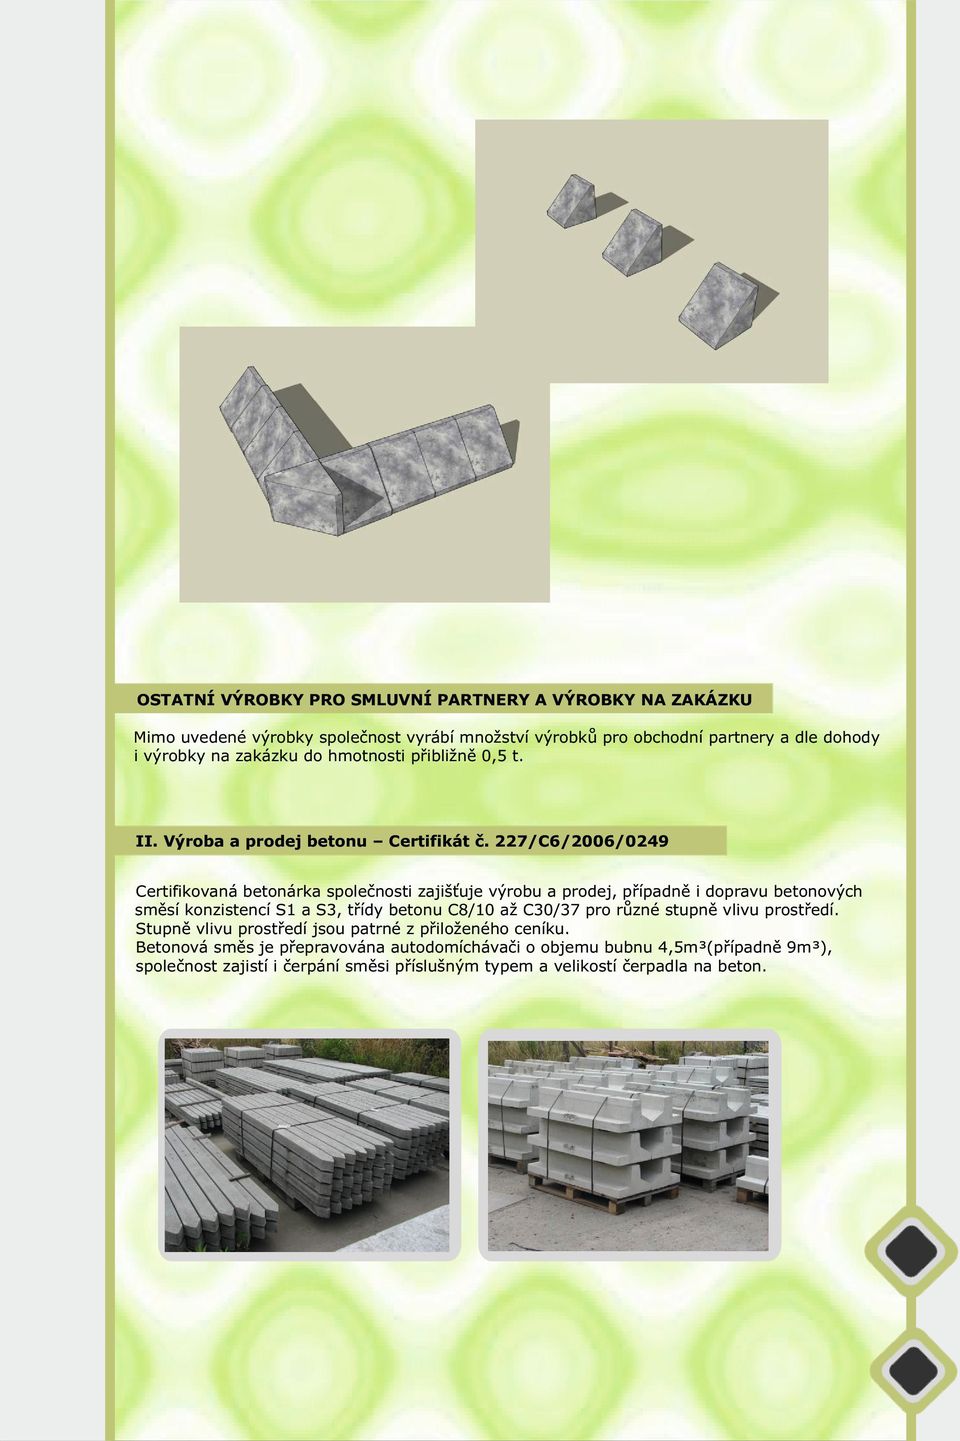 227/C6/2006/0249 Certifikovaná betonárka společnosti zajišťuje výrobu a prodej, případně i dopravu betonových směsí konzistencí S1 a S3, třídy betonu C8/10 až